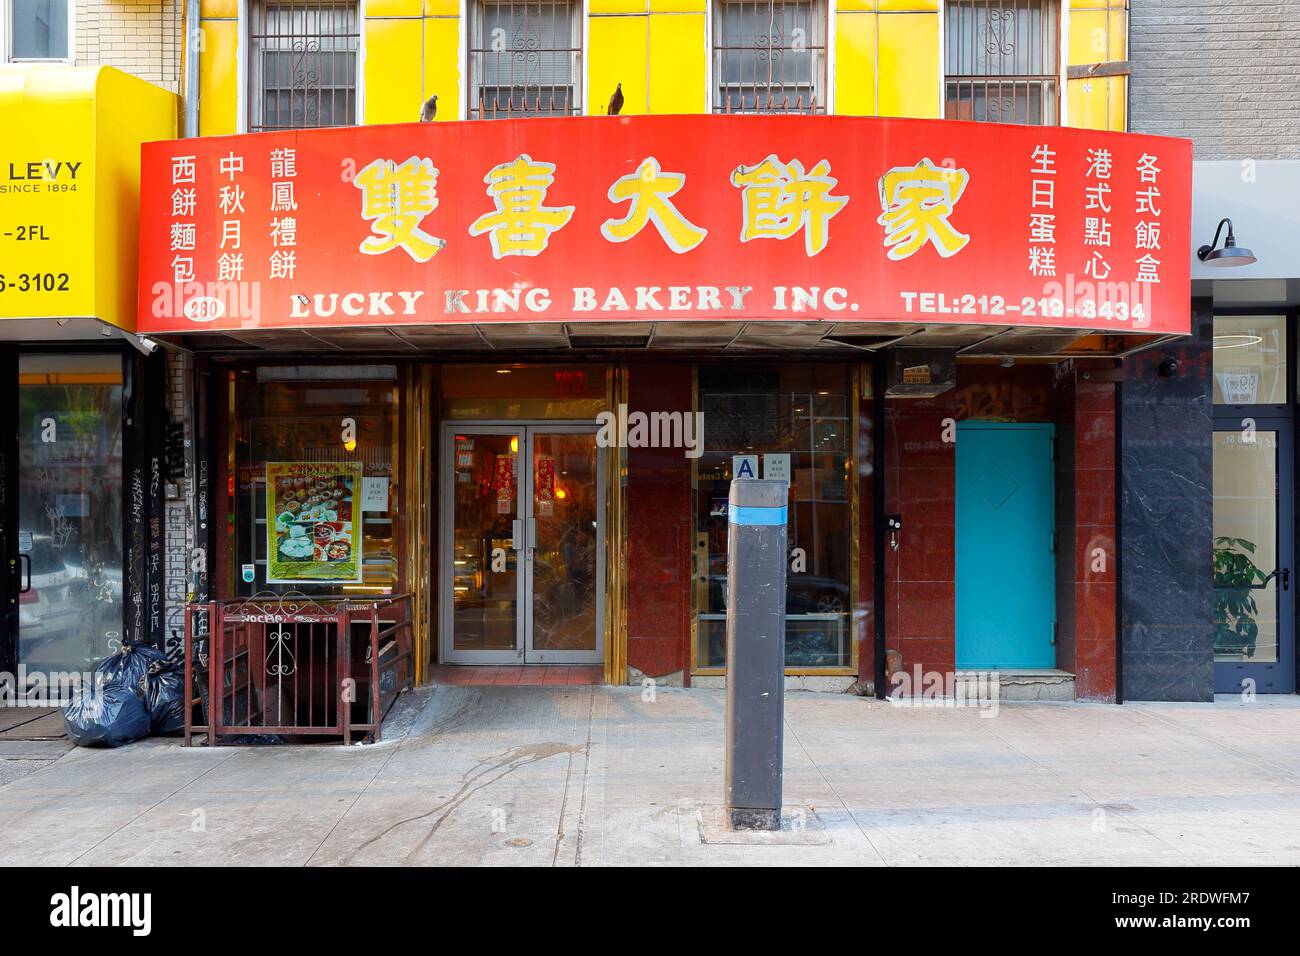 Lucky King Bakery 雙喜大餅家, 280 Grand St, New York, NYC photo de la vitrine d'une boulangerie chinoise dans le quartier chinois de Manhattan. Banque D'Images